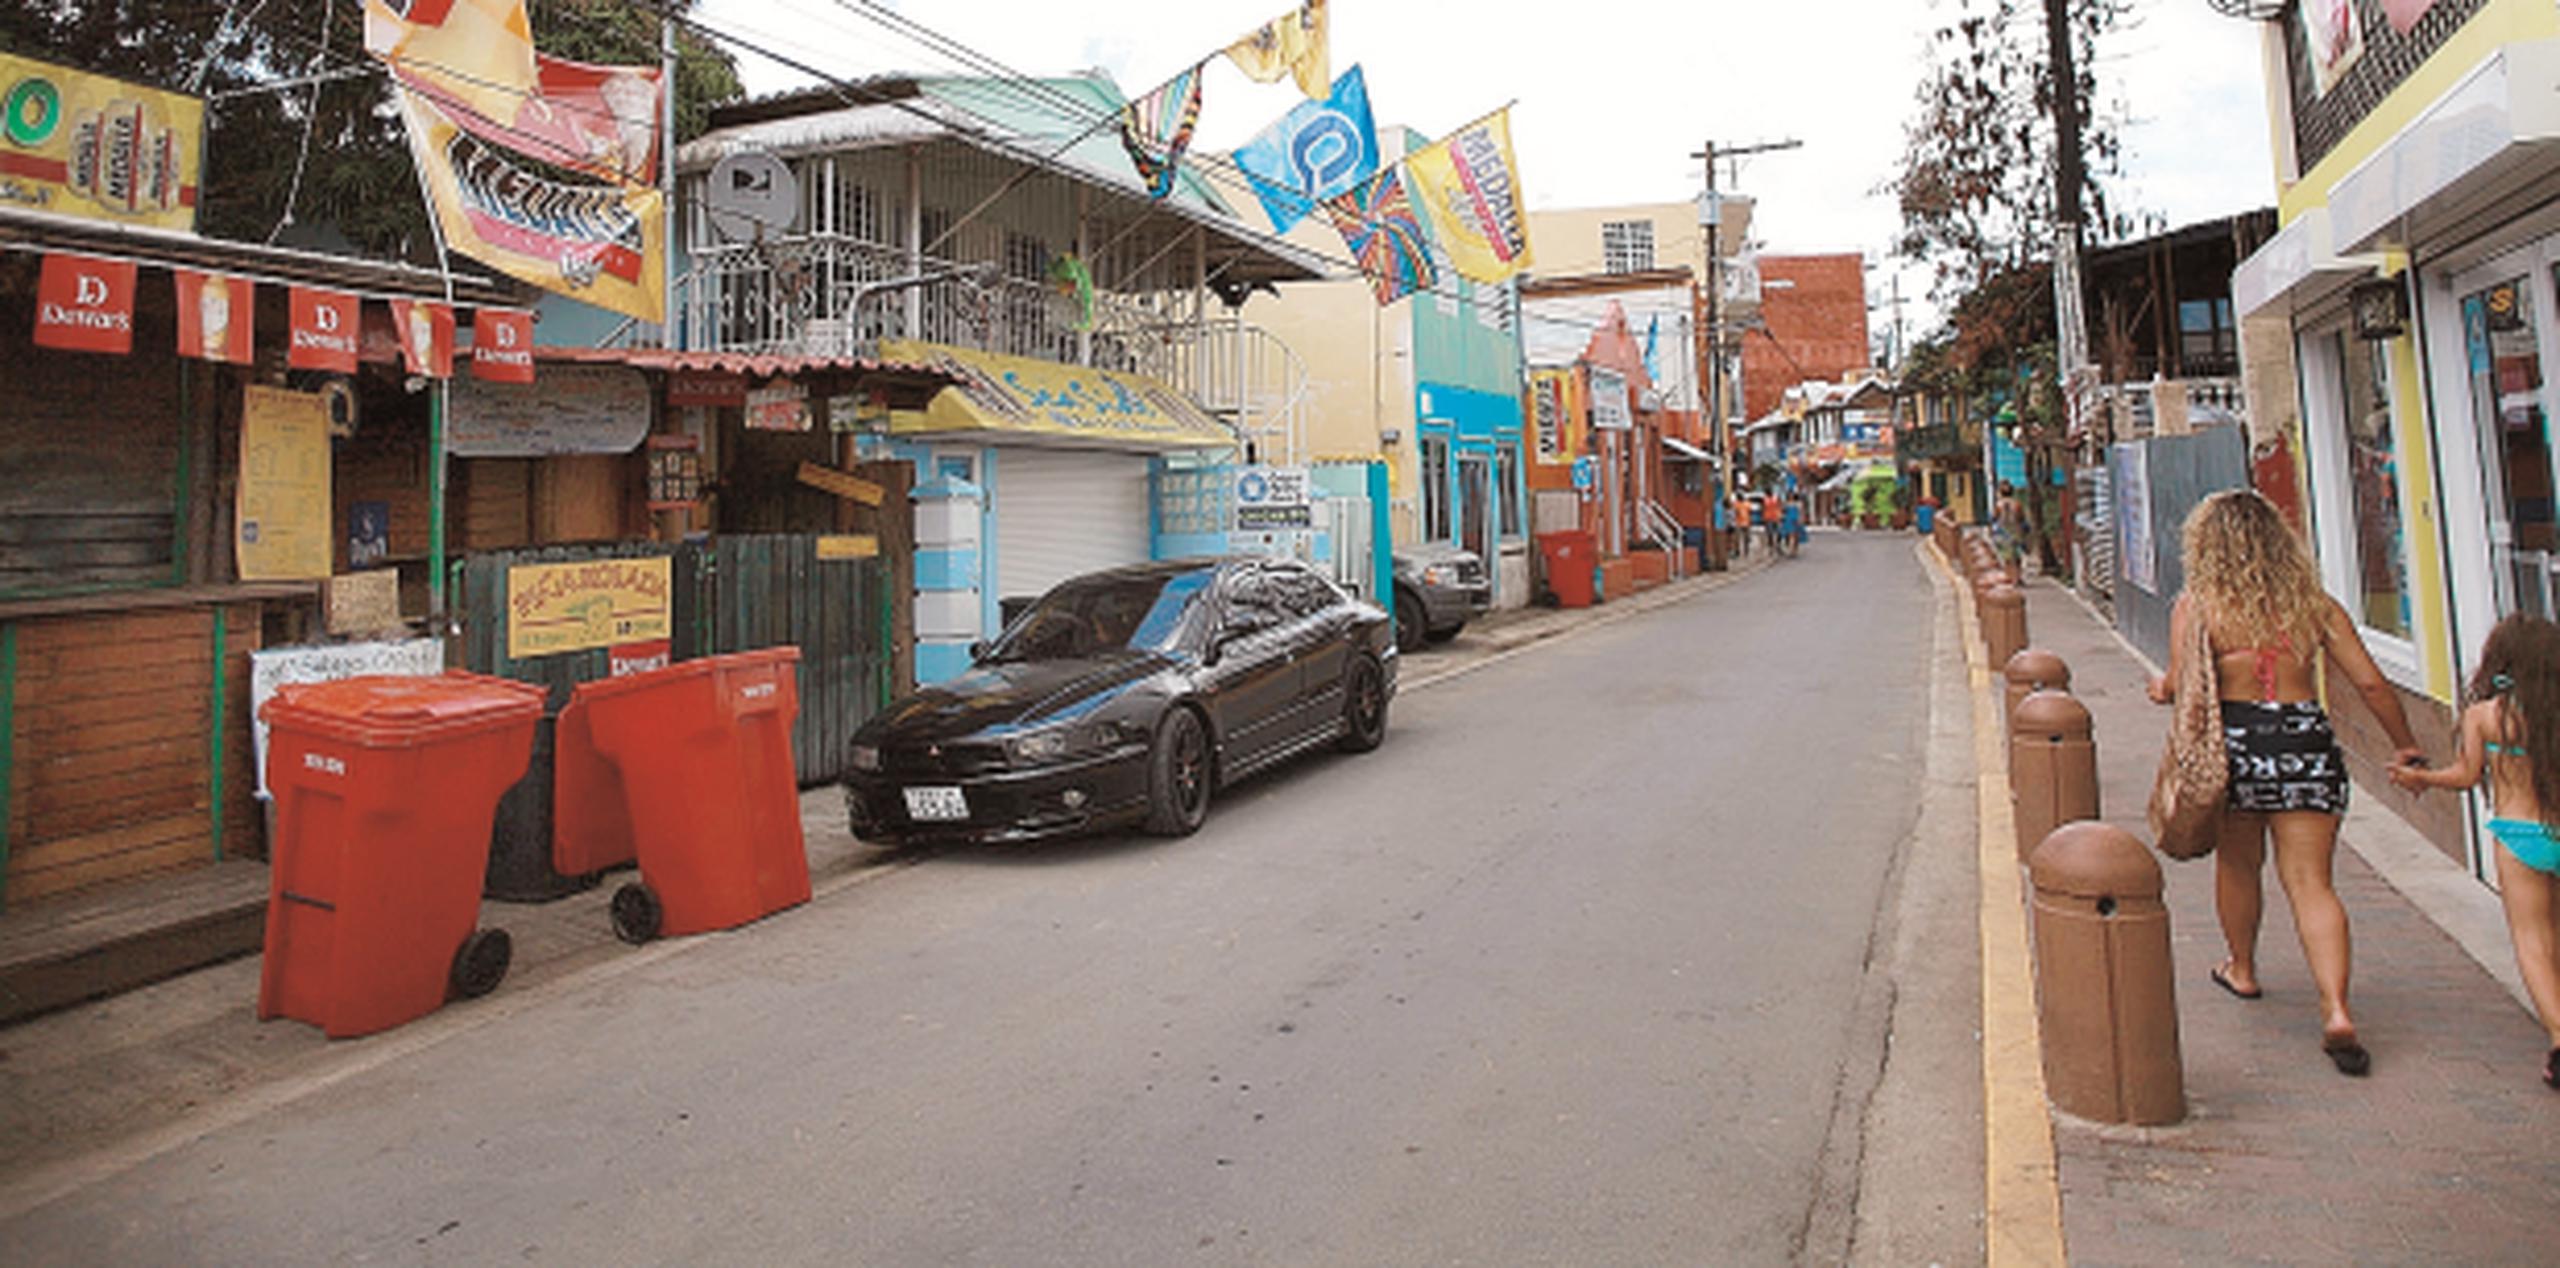 El viernes pasado, la OAM radicó una demanda contra el Municipio de Cabo Rojo por la otorgación de un contrato exclusivo a CWS para el recogido de los desperdicios sólidos con la venta exclusiva de bolsas plásticas anaranjadas. (Archivo)